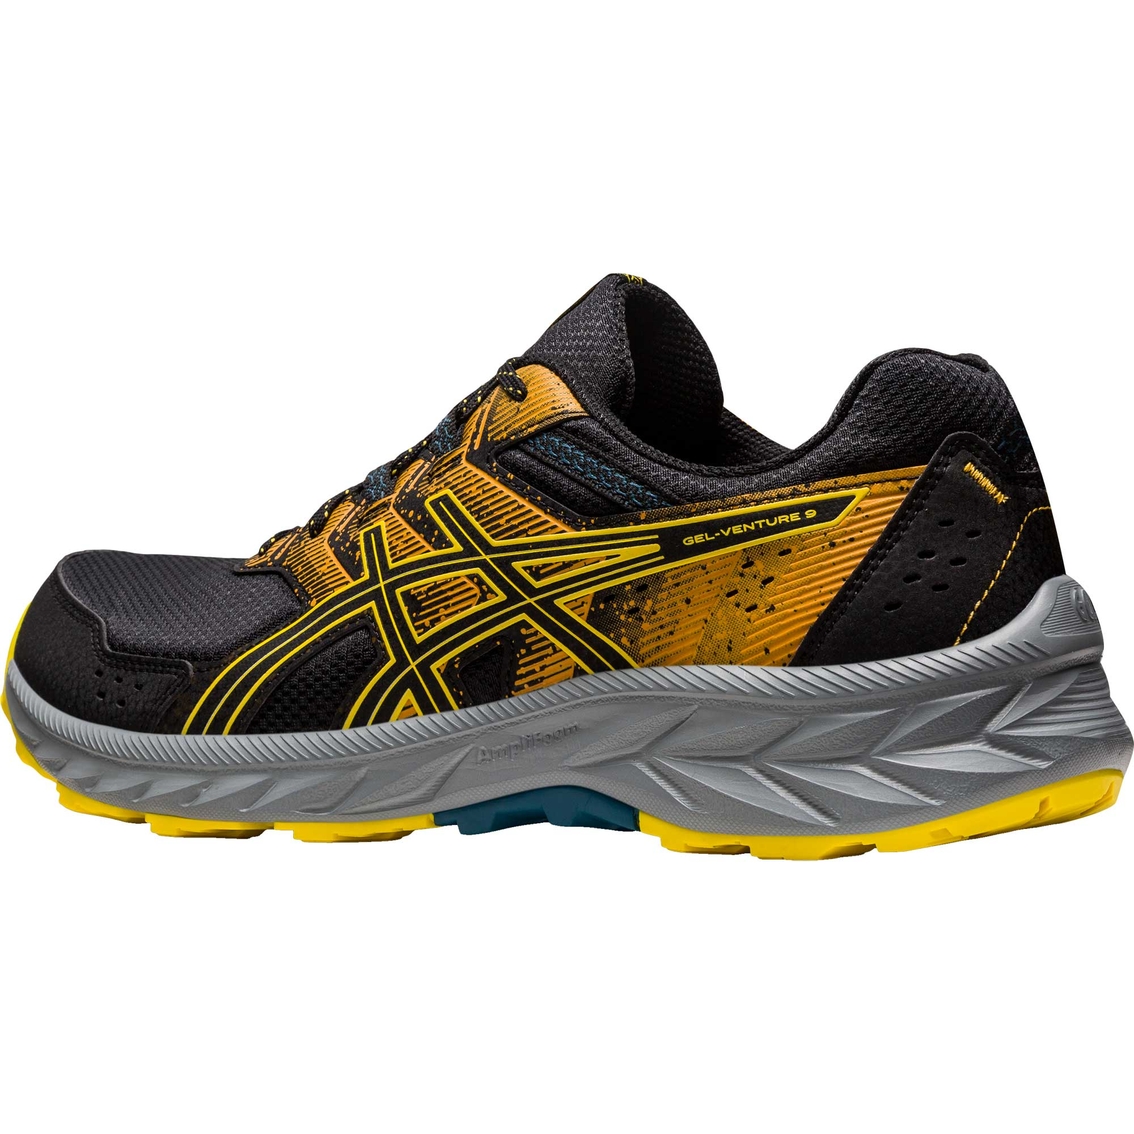 Asics Men's Gel Venture 9 Running Shoes | Men's Athletic Shoes | Shoes ...